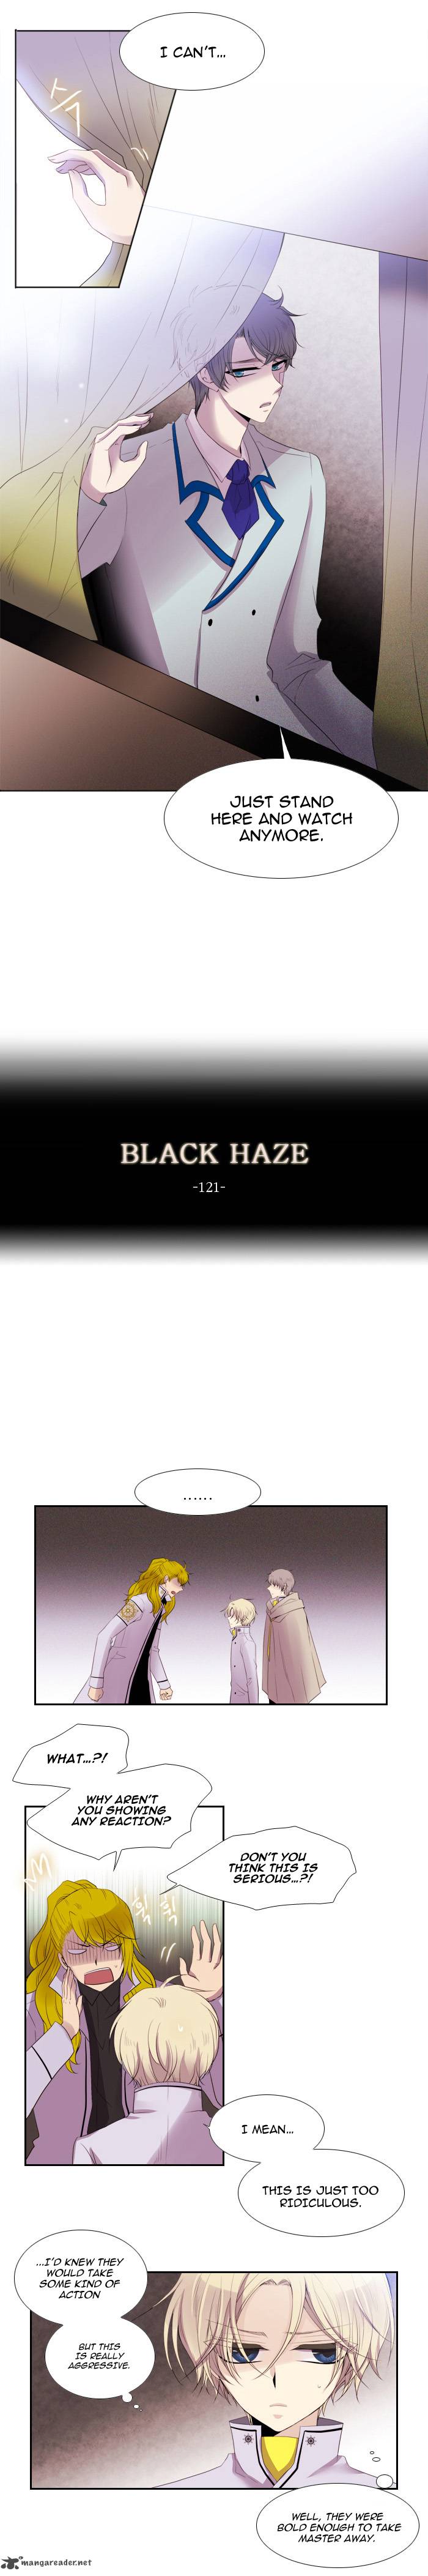 Black Haze 121